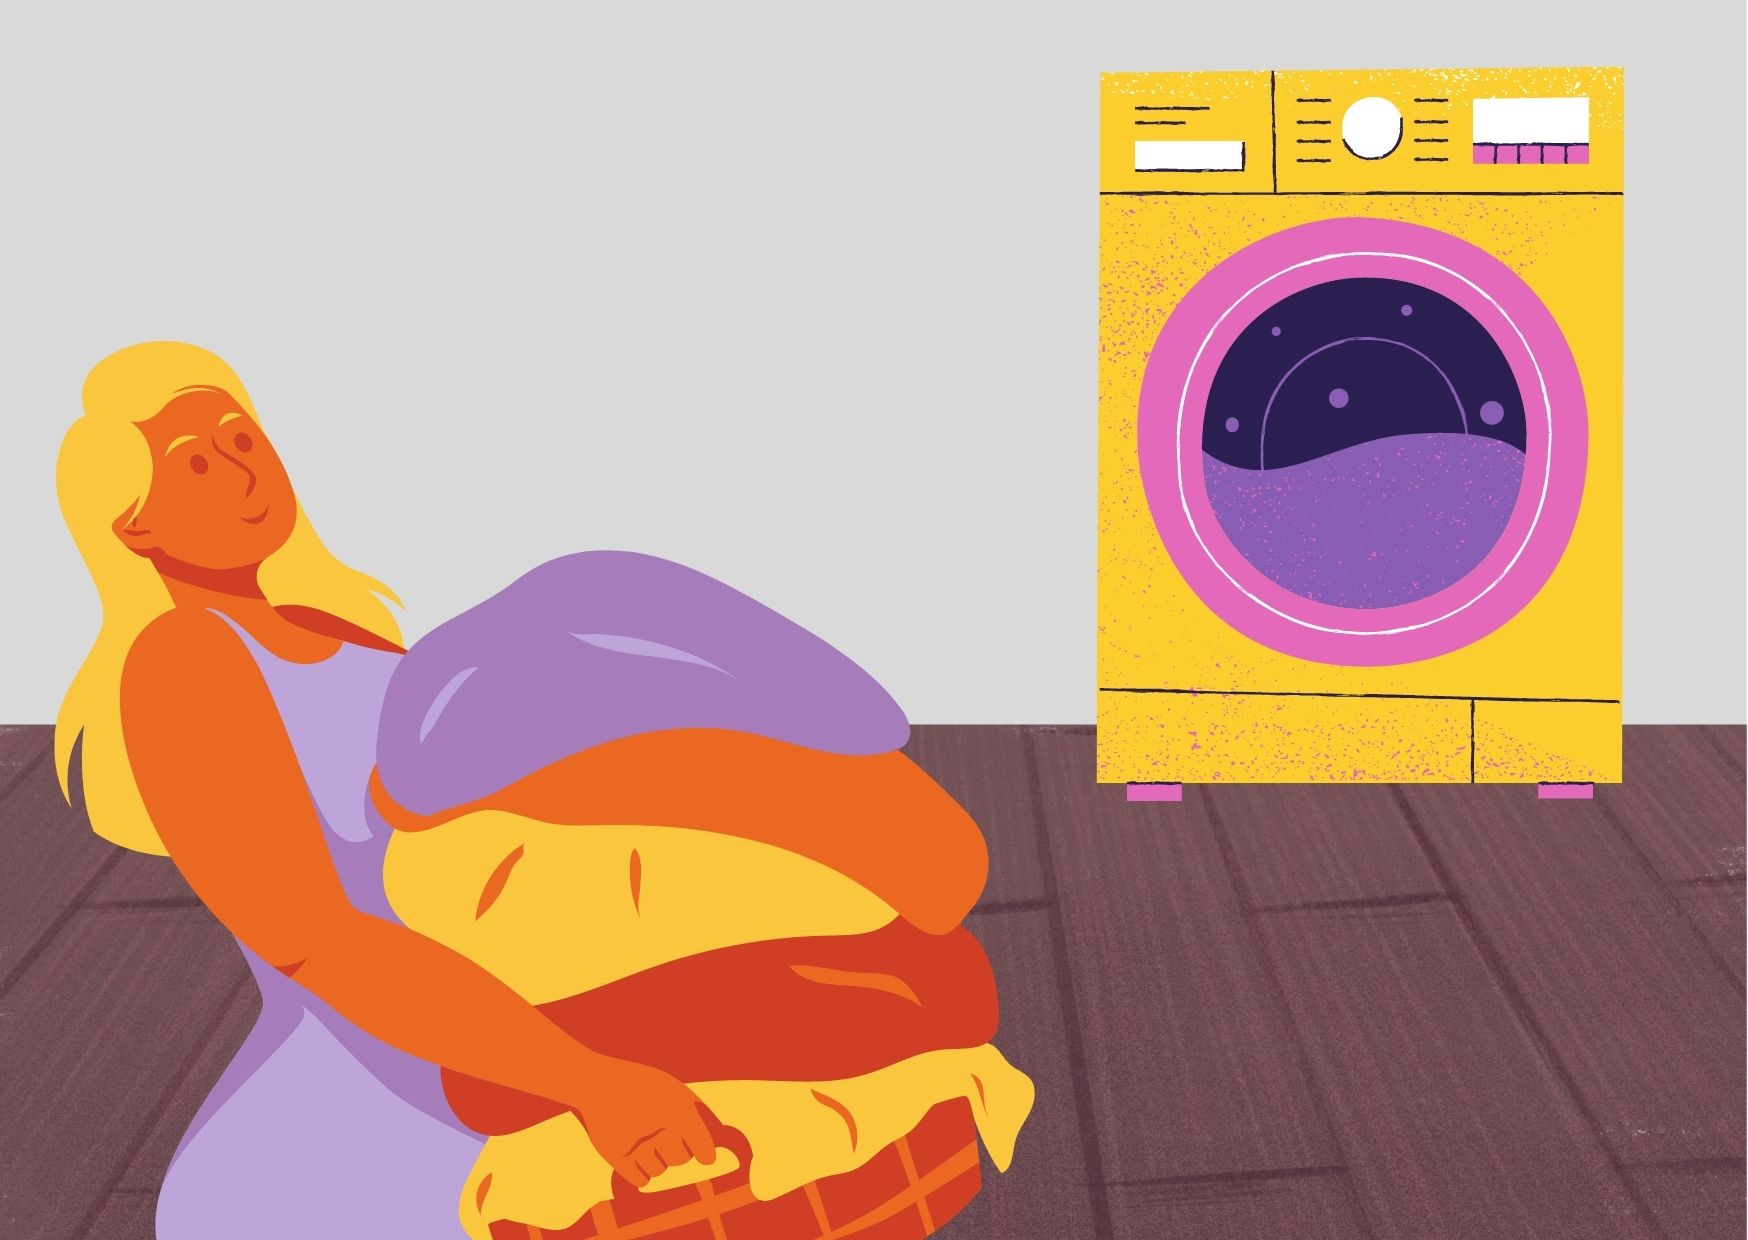 mekanisme laundry antar jemput